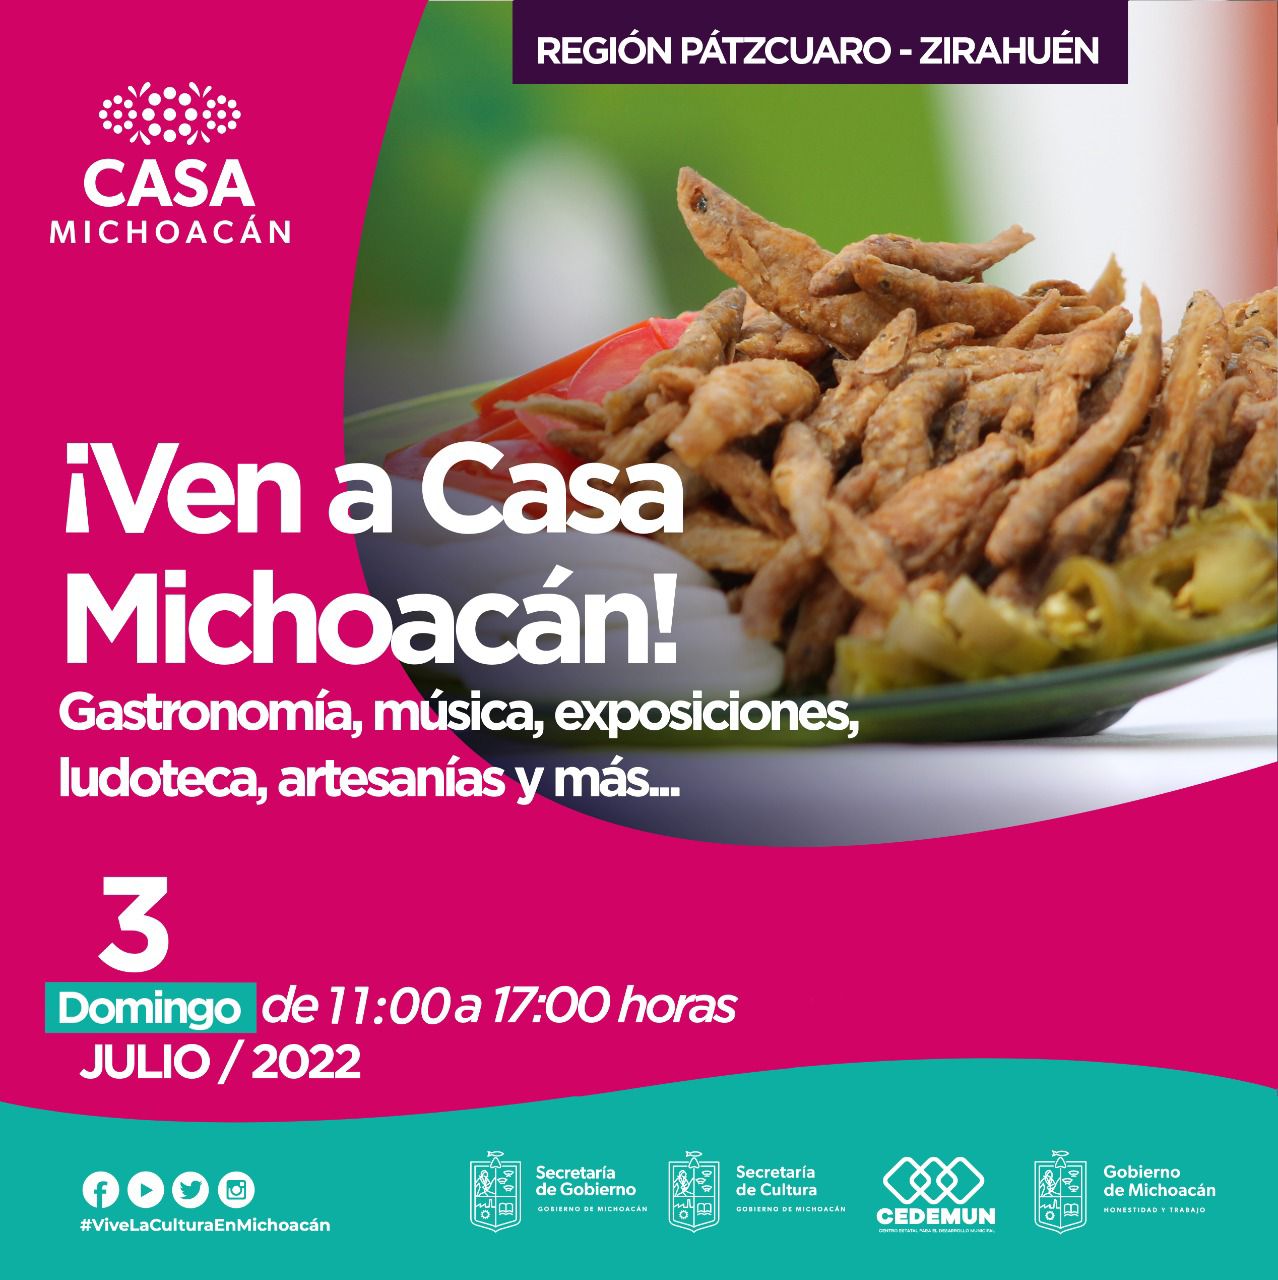 ¡Ven a Casa Michoacán! a pasar un domingo familiar